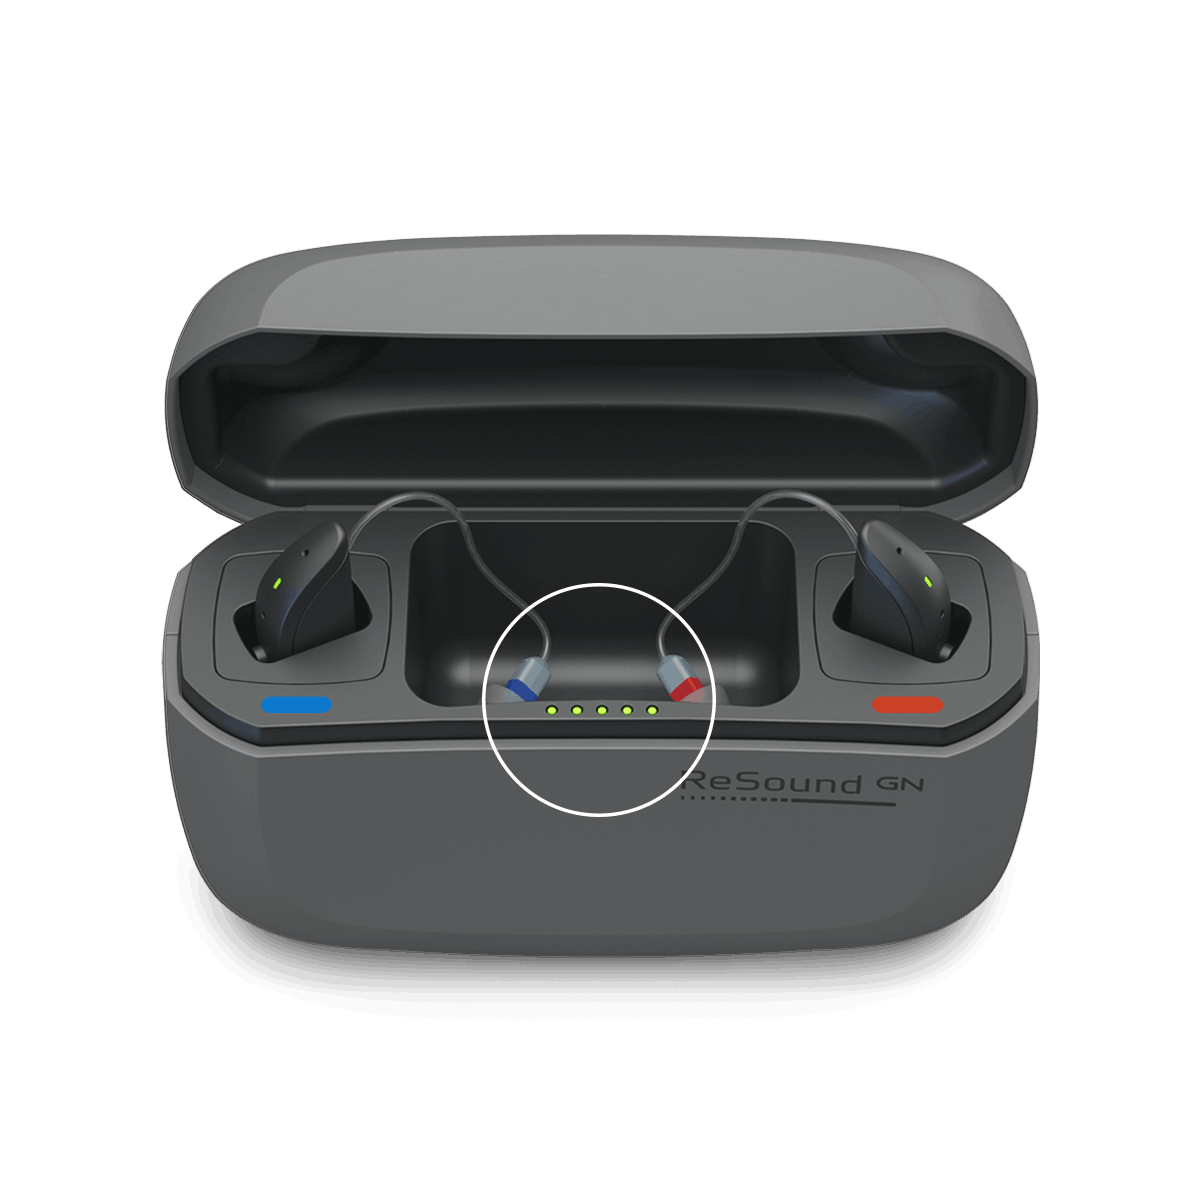 Die Premium-Ladeschale unseres neuesten Hörsystems mit natürlichster Klangqualität – ReSound ONE